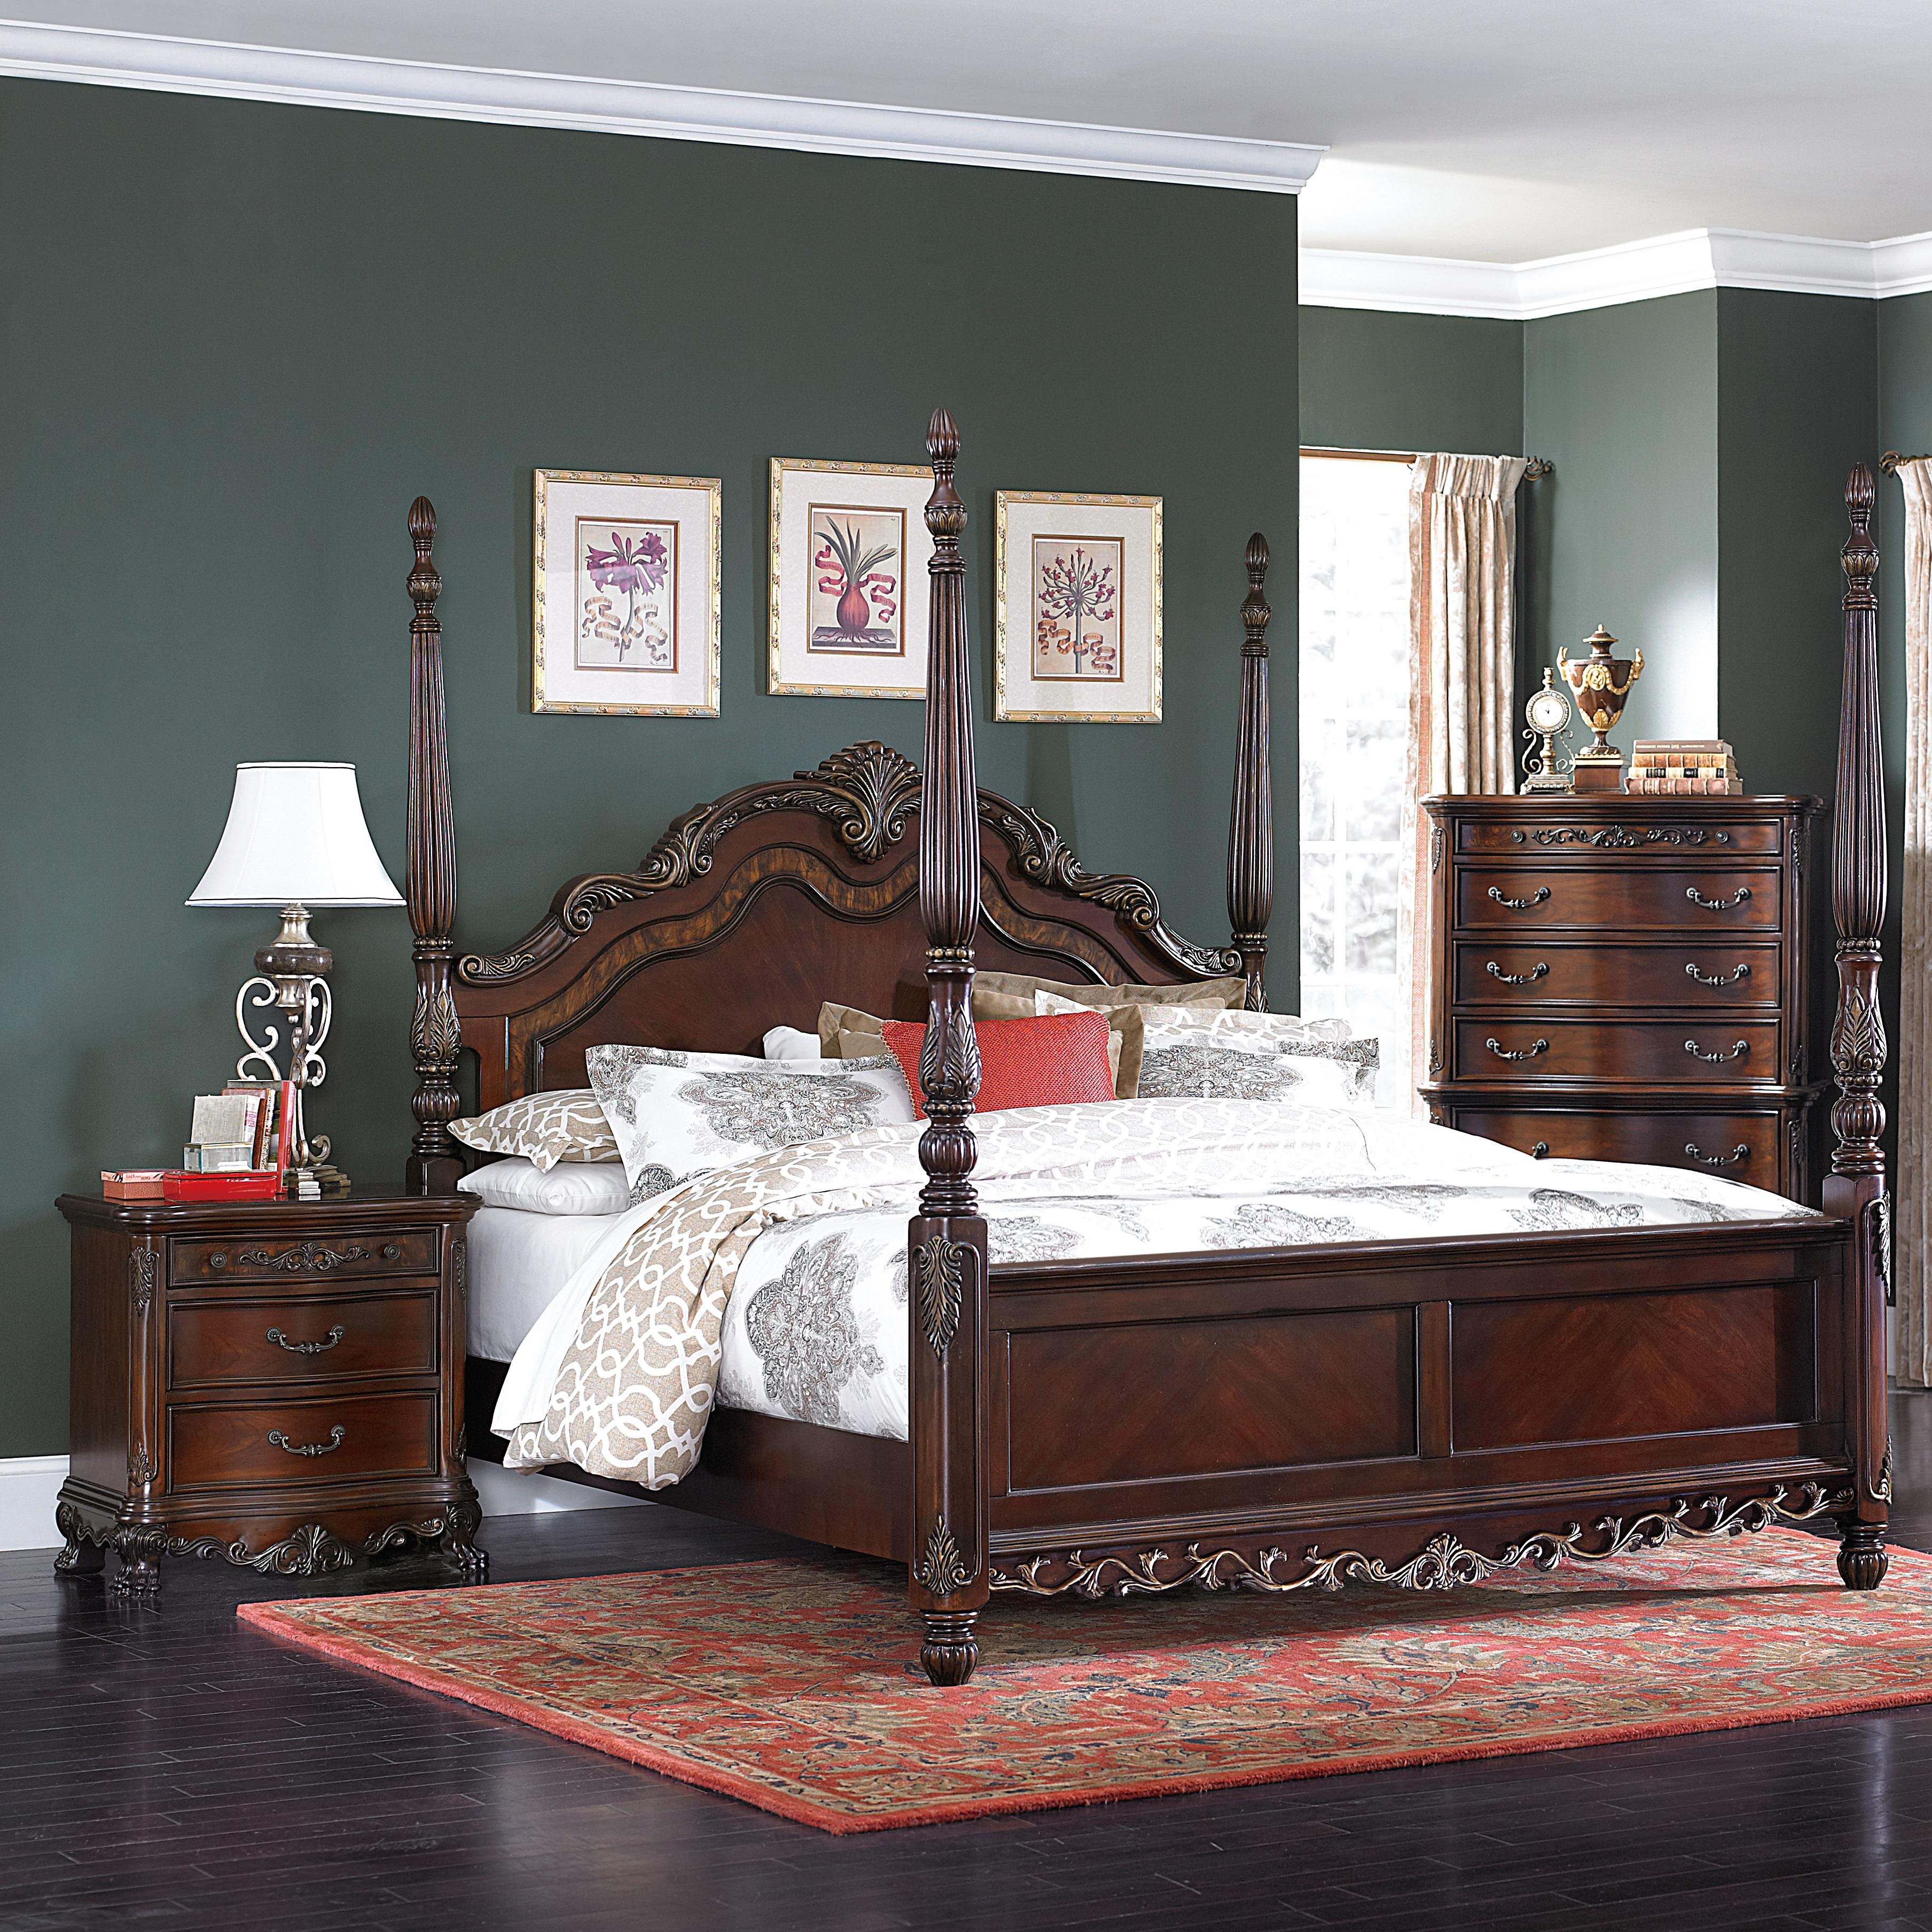 

    
Traditional Cherry Wood Queen Bedroom Set 3pcs Homelegance 2243-1* Deryn Park
